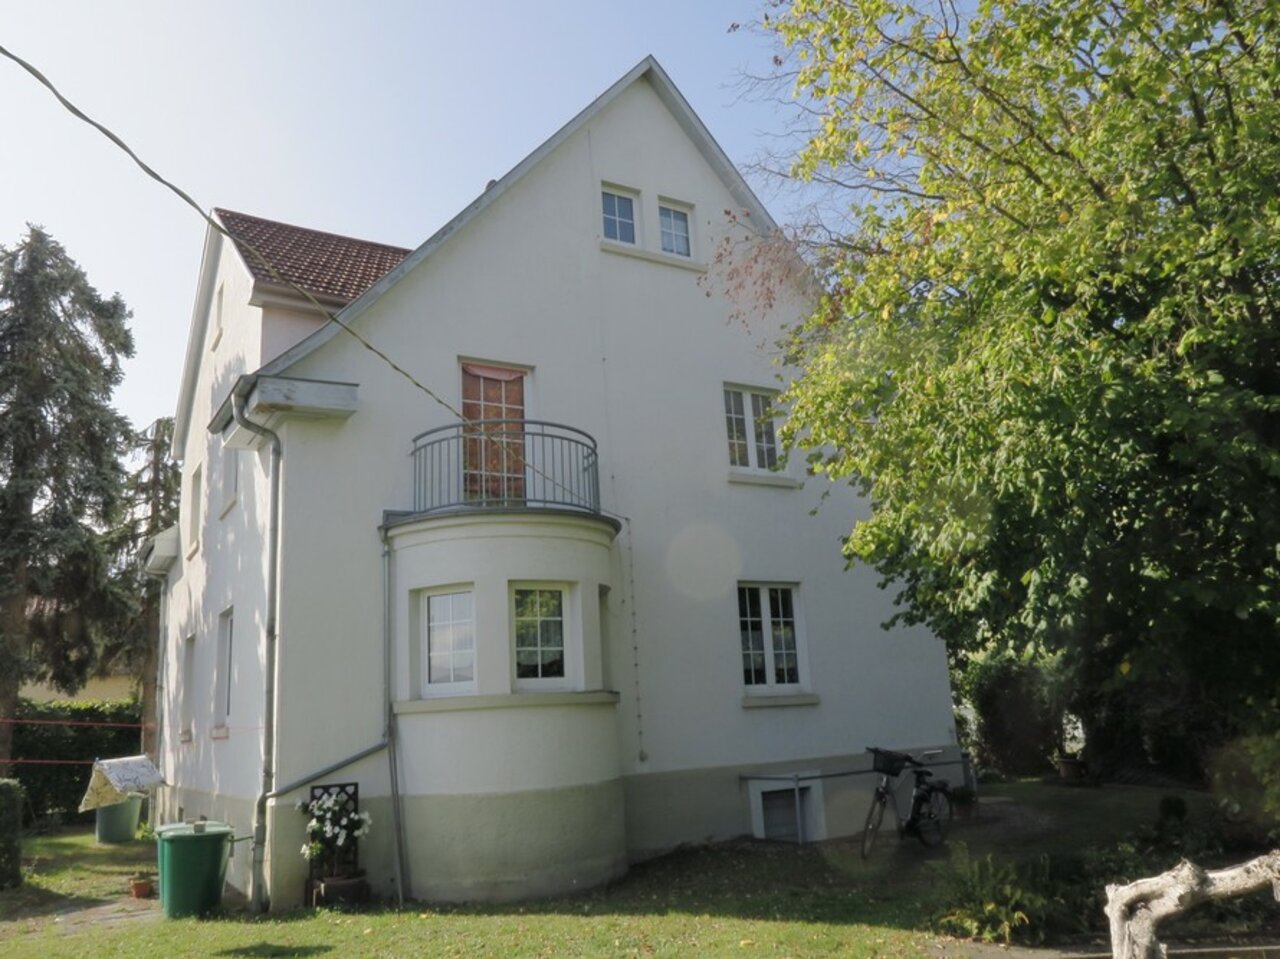 Ehemalige Fabrikantenvilla mit parkähnlichem Grundstück in Arnstadt-Haus - Gartenansicht